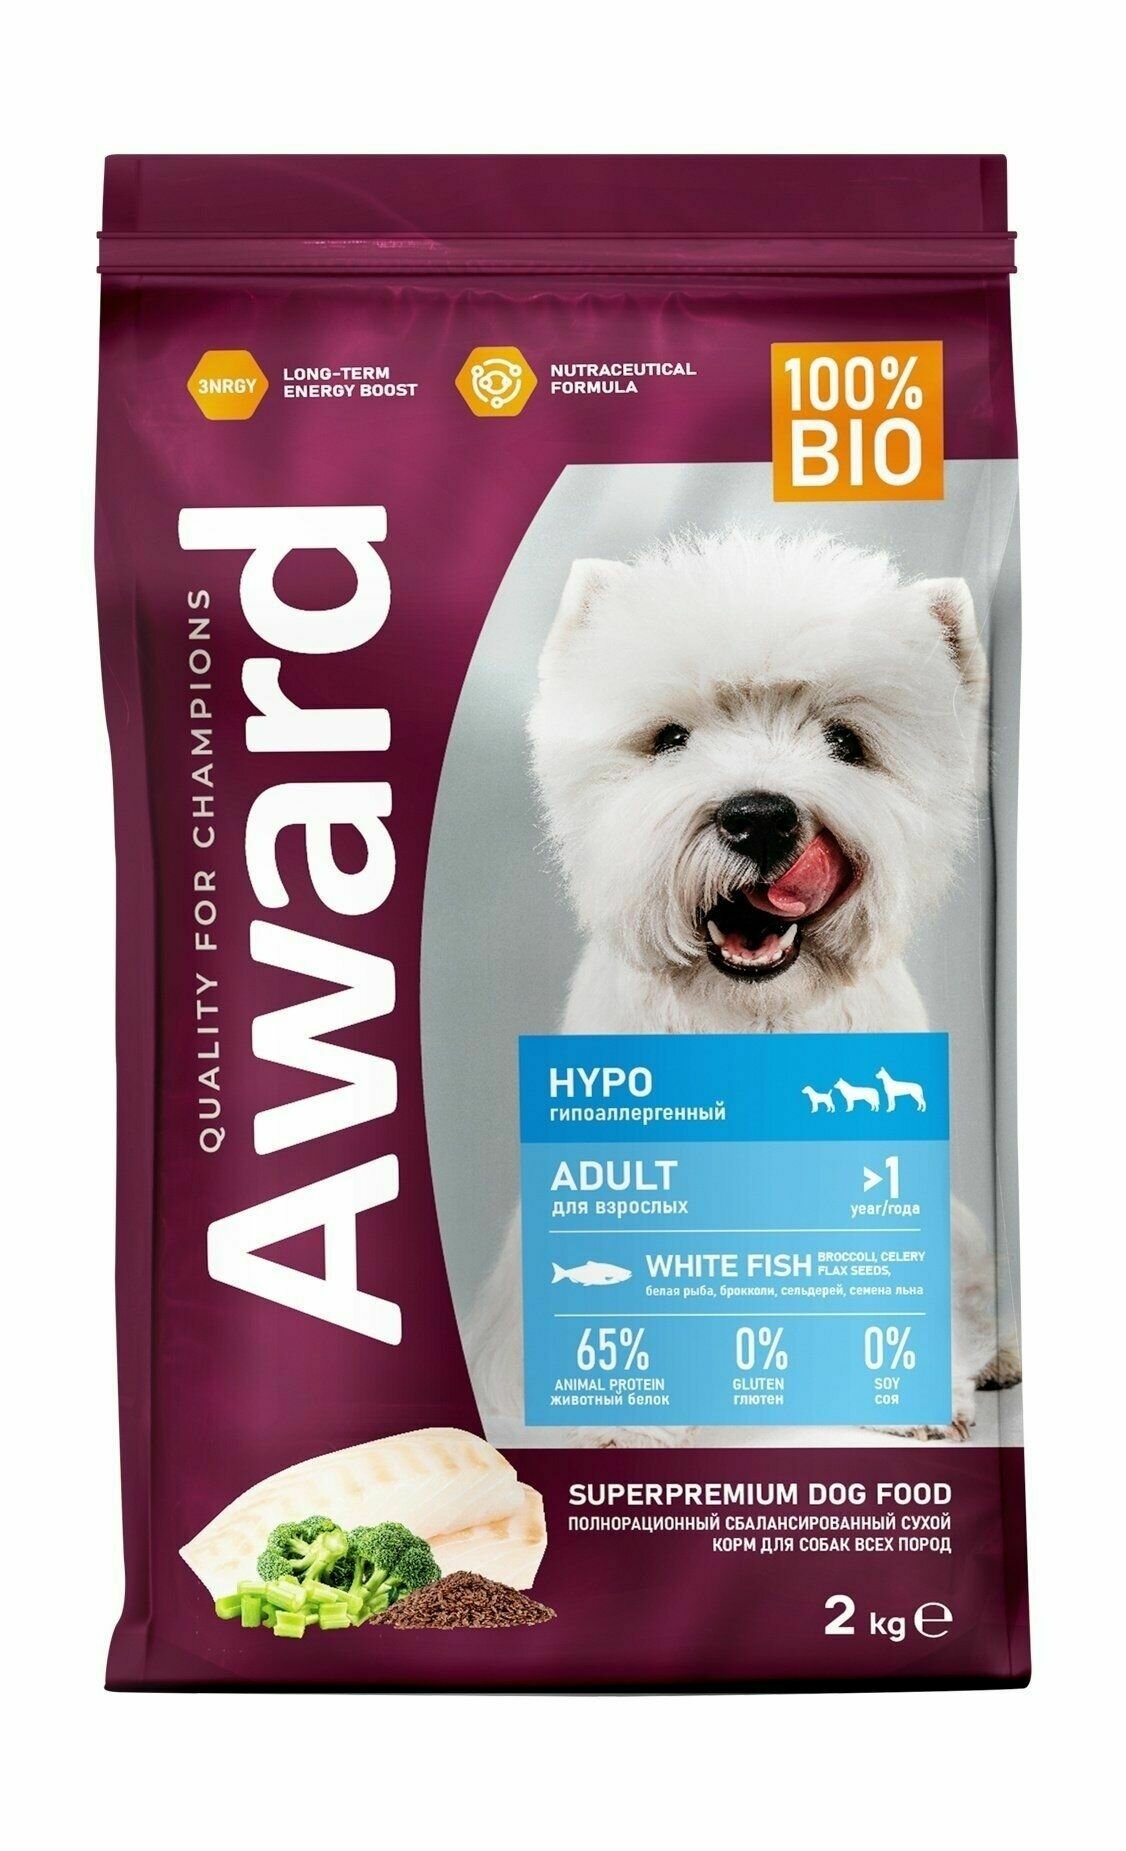 Award HYPO - Сухой корм для взрослых собак всех пород с белой рыбой с добавлением брокколи, сельдерея и семян льна (2кг)